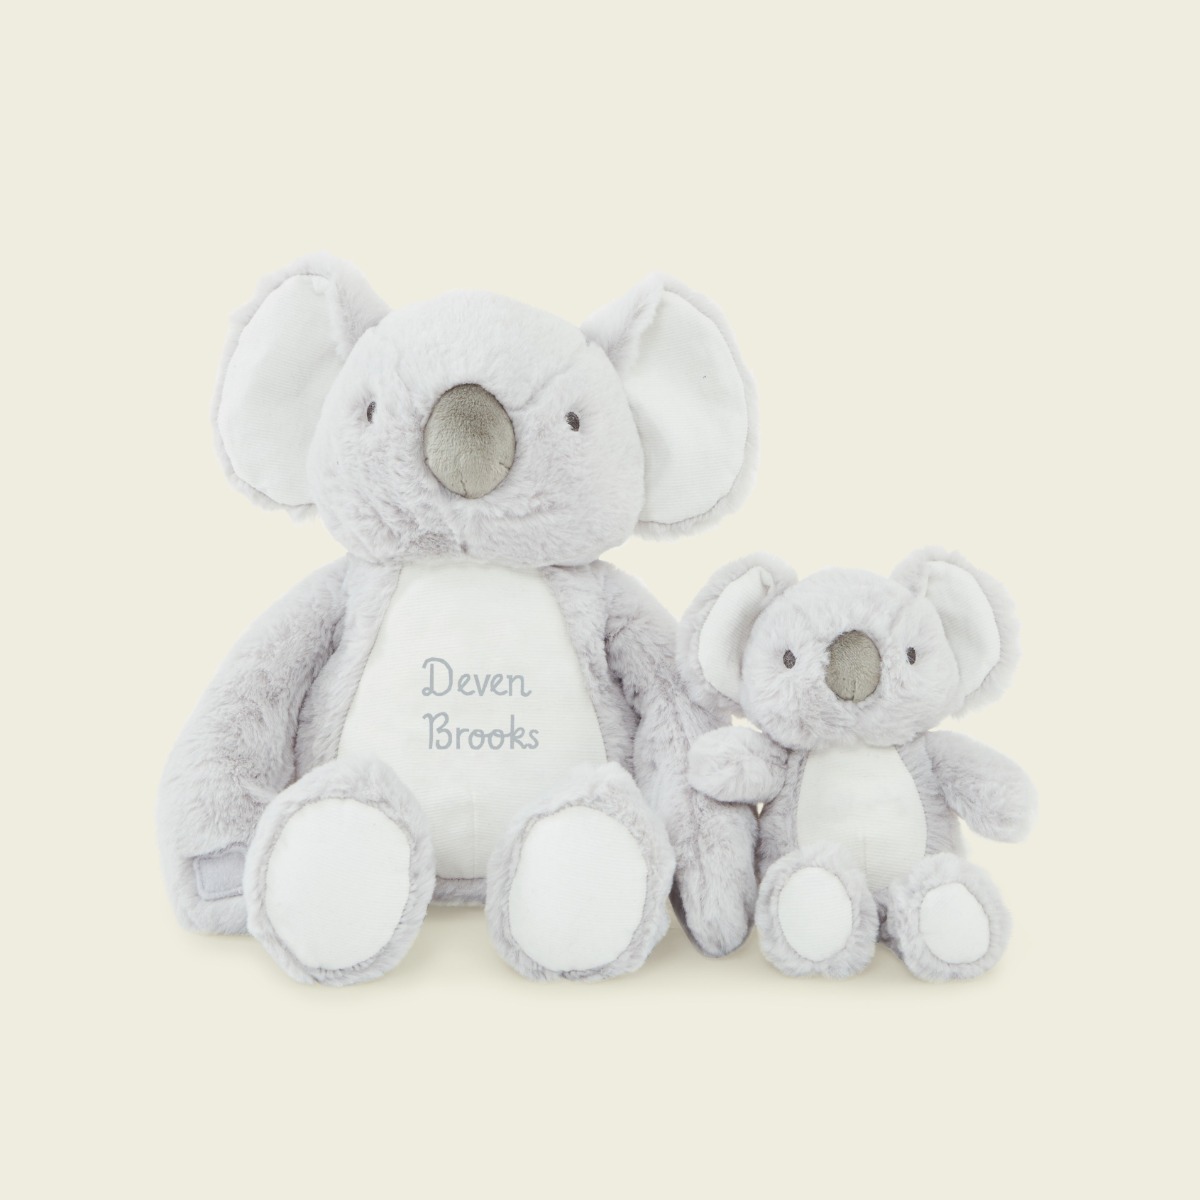 Personalised Koala Soft Toy